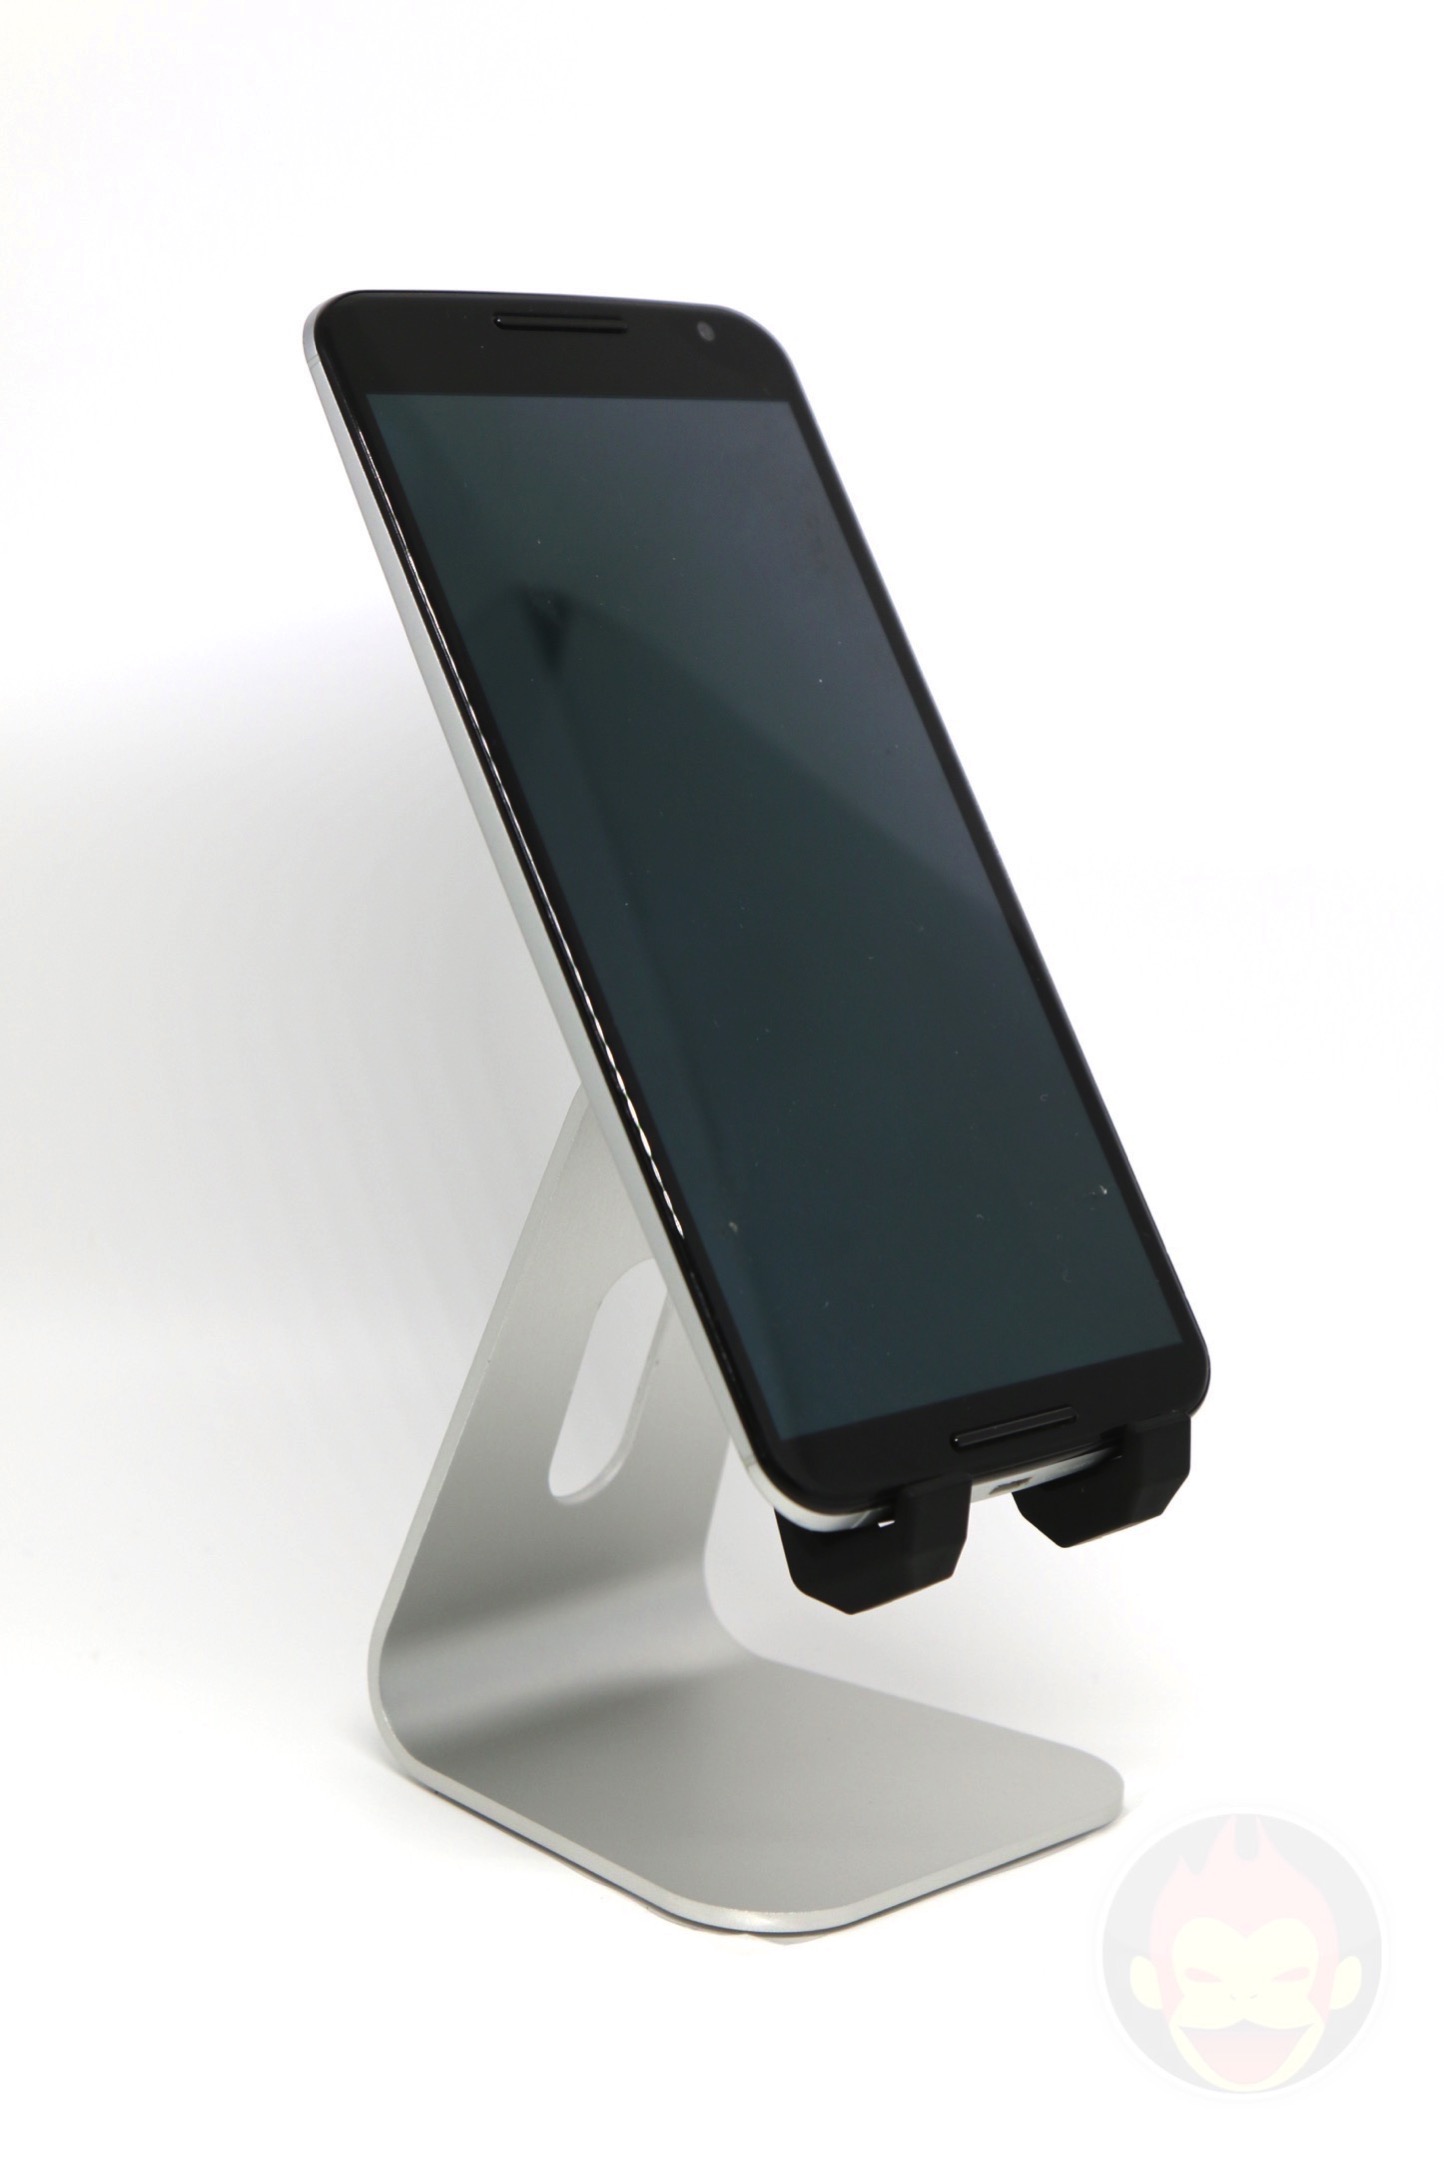 Spigen-S310-Smartphone-Stand-10.jpg